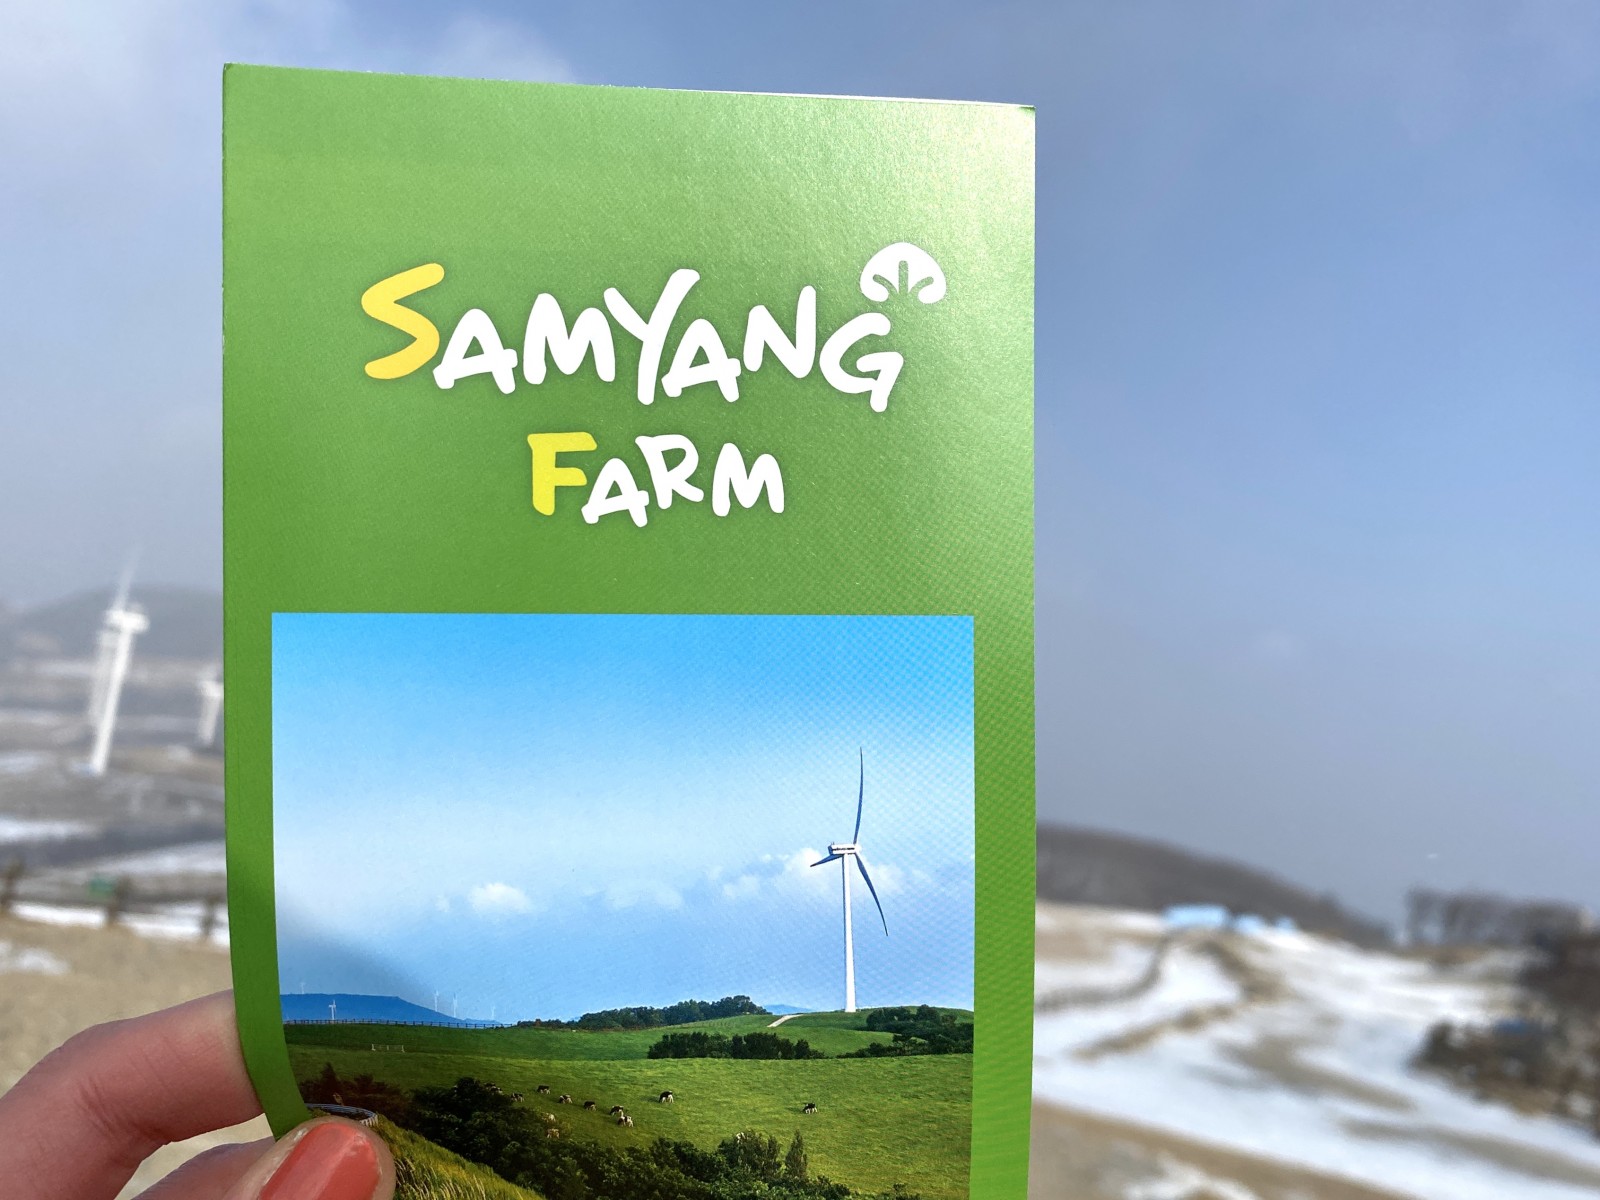 Ветровая электростанция в Южной Корее - Samyang Farm (삼양식품)